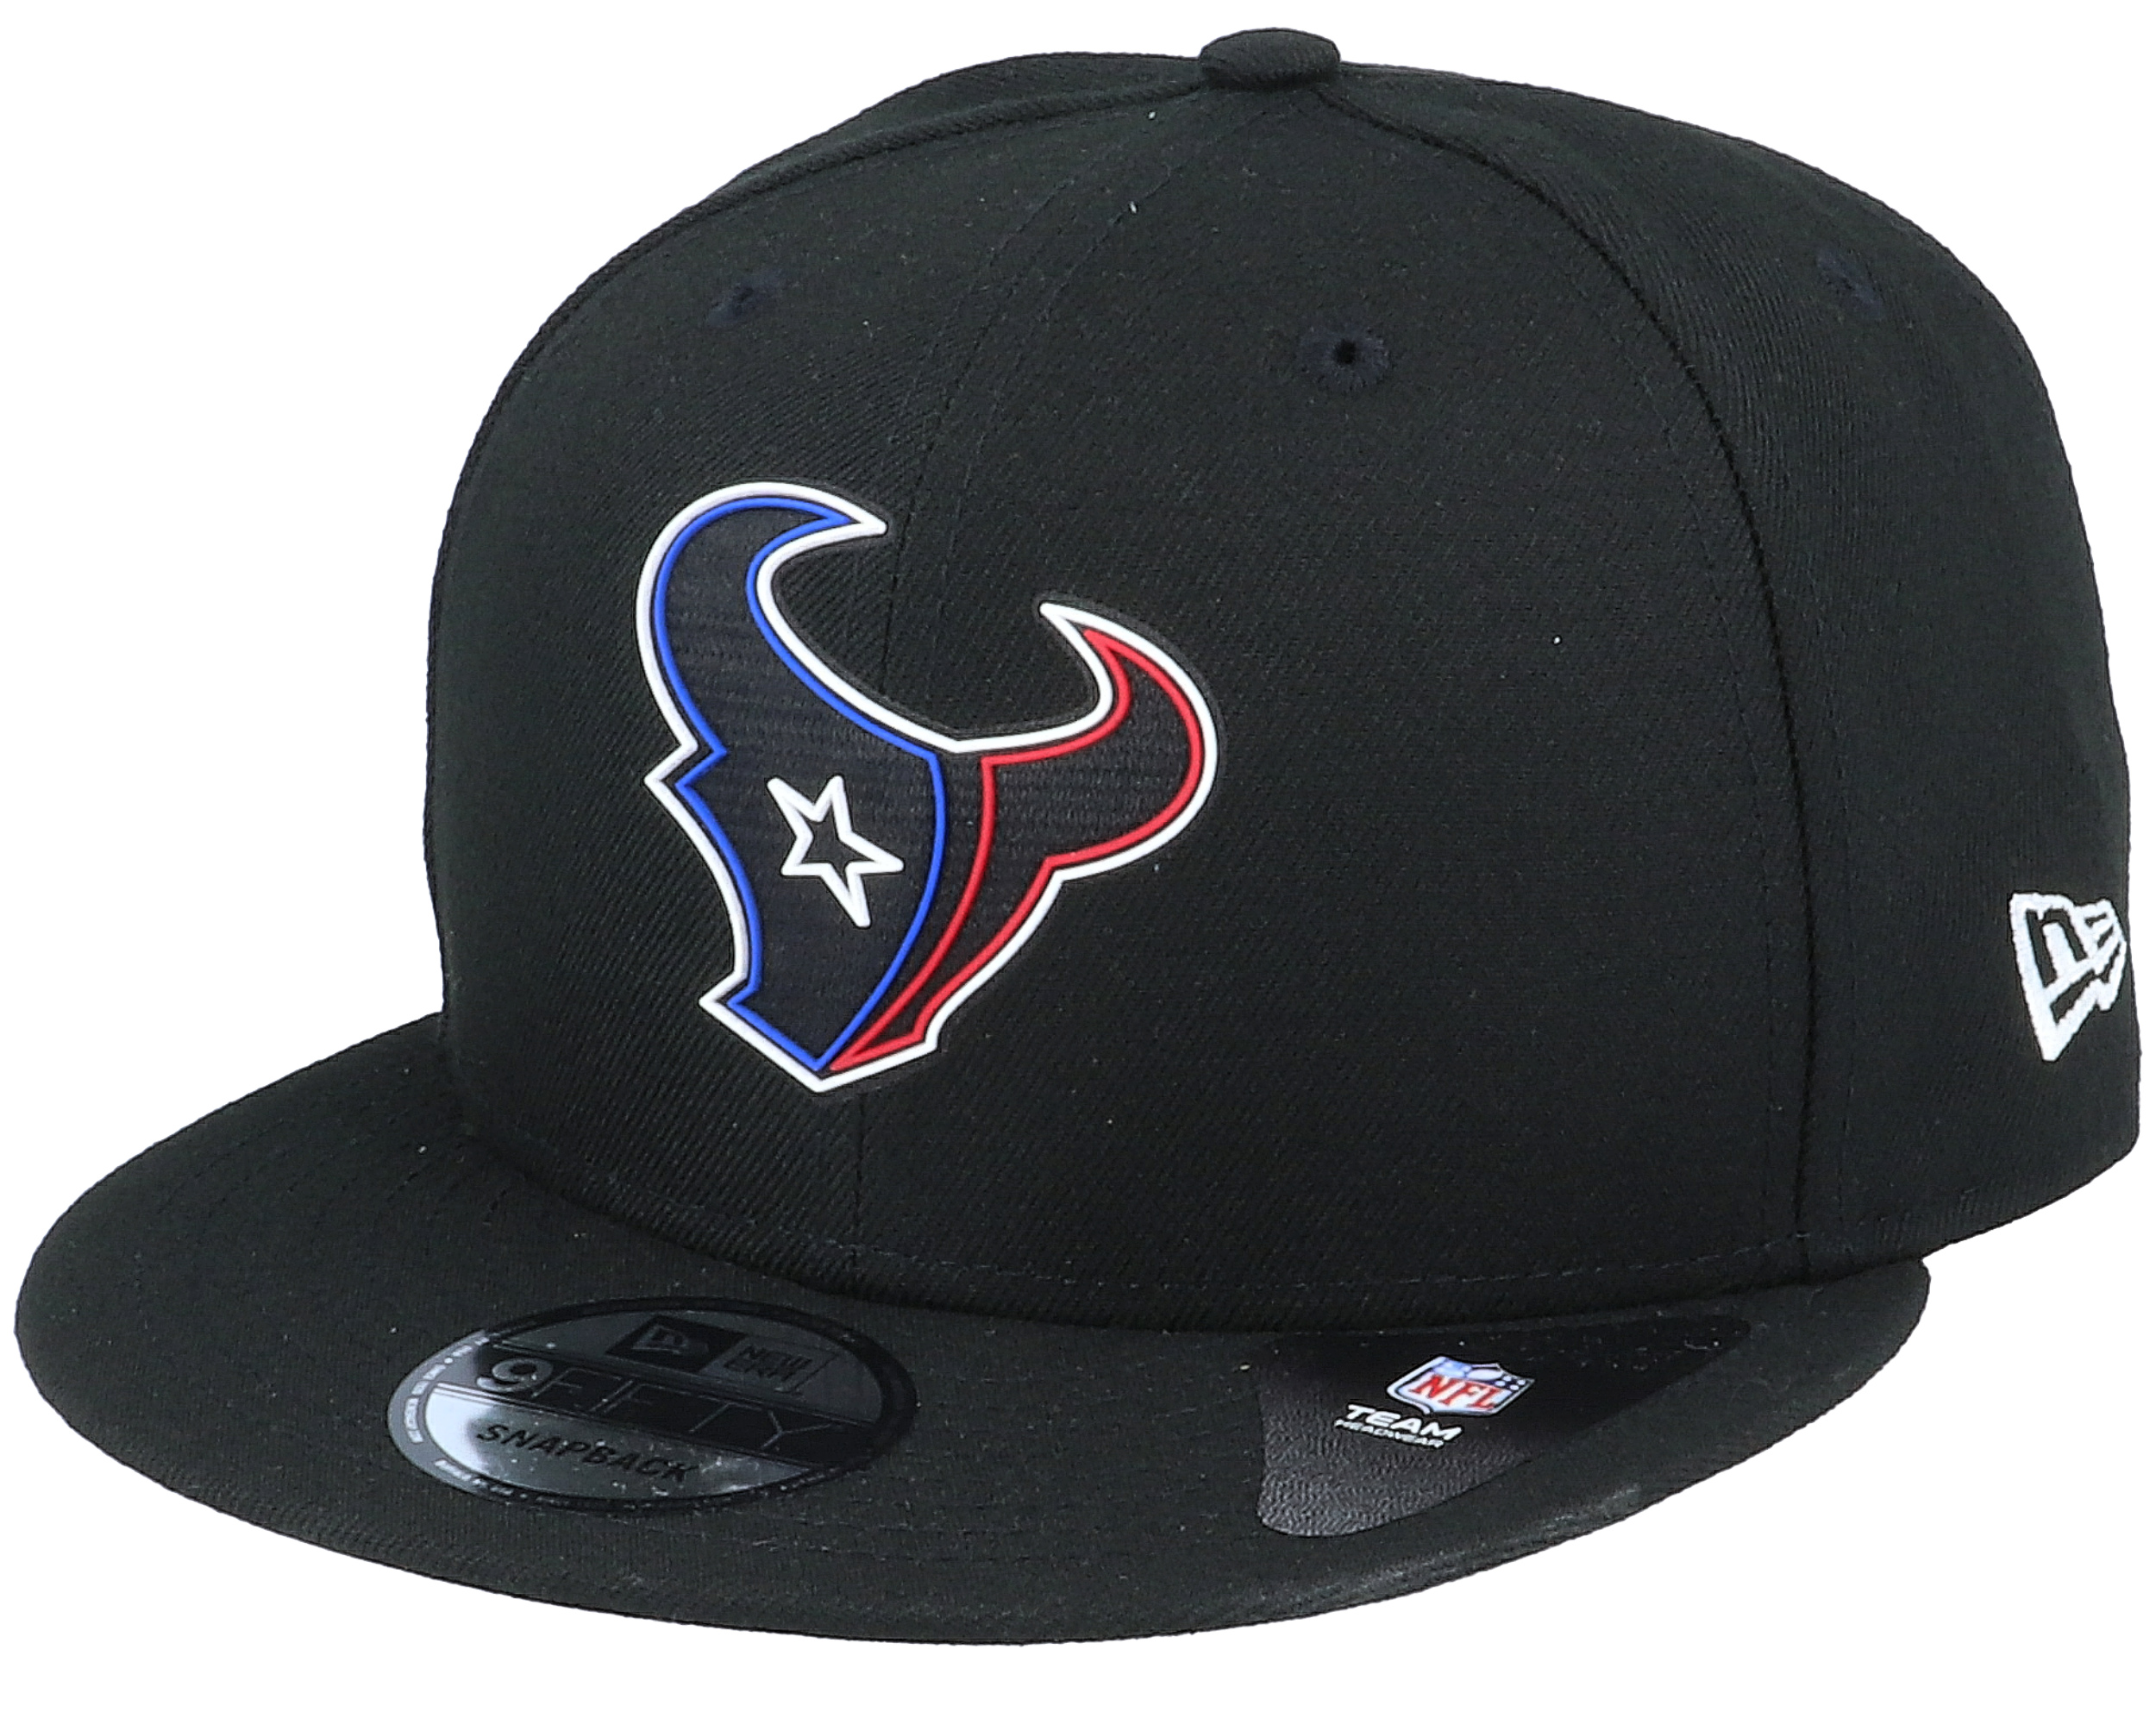 Houston Texans NFL 20 Draft Official 9Fifty Black Snapback New Era